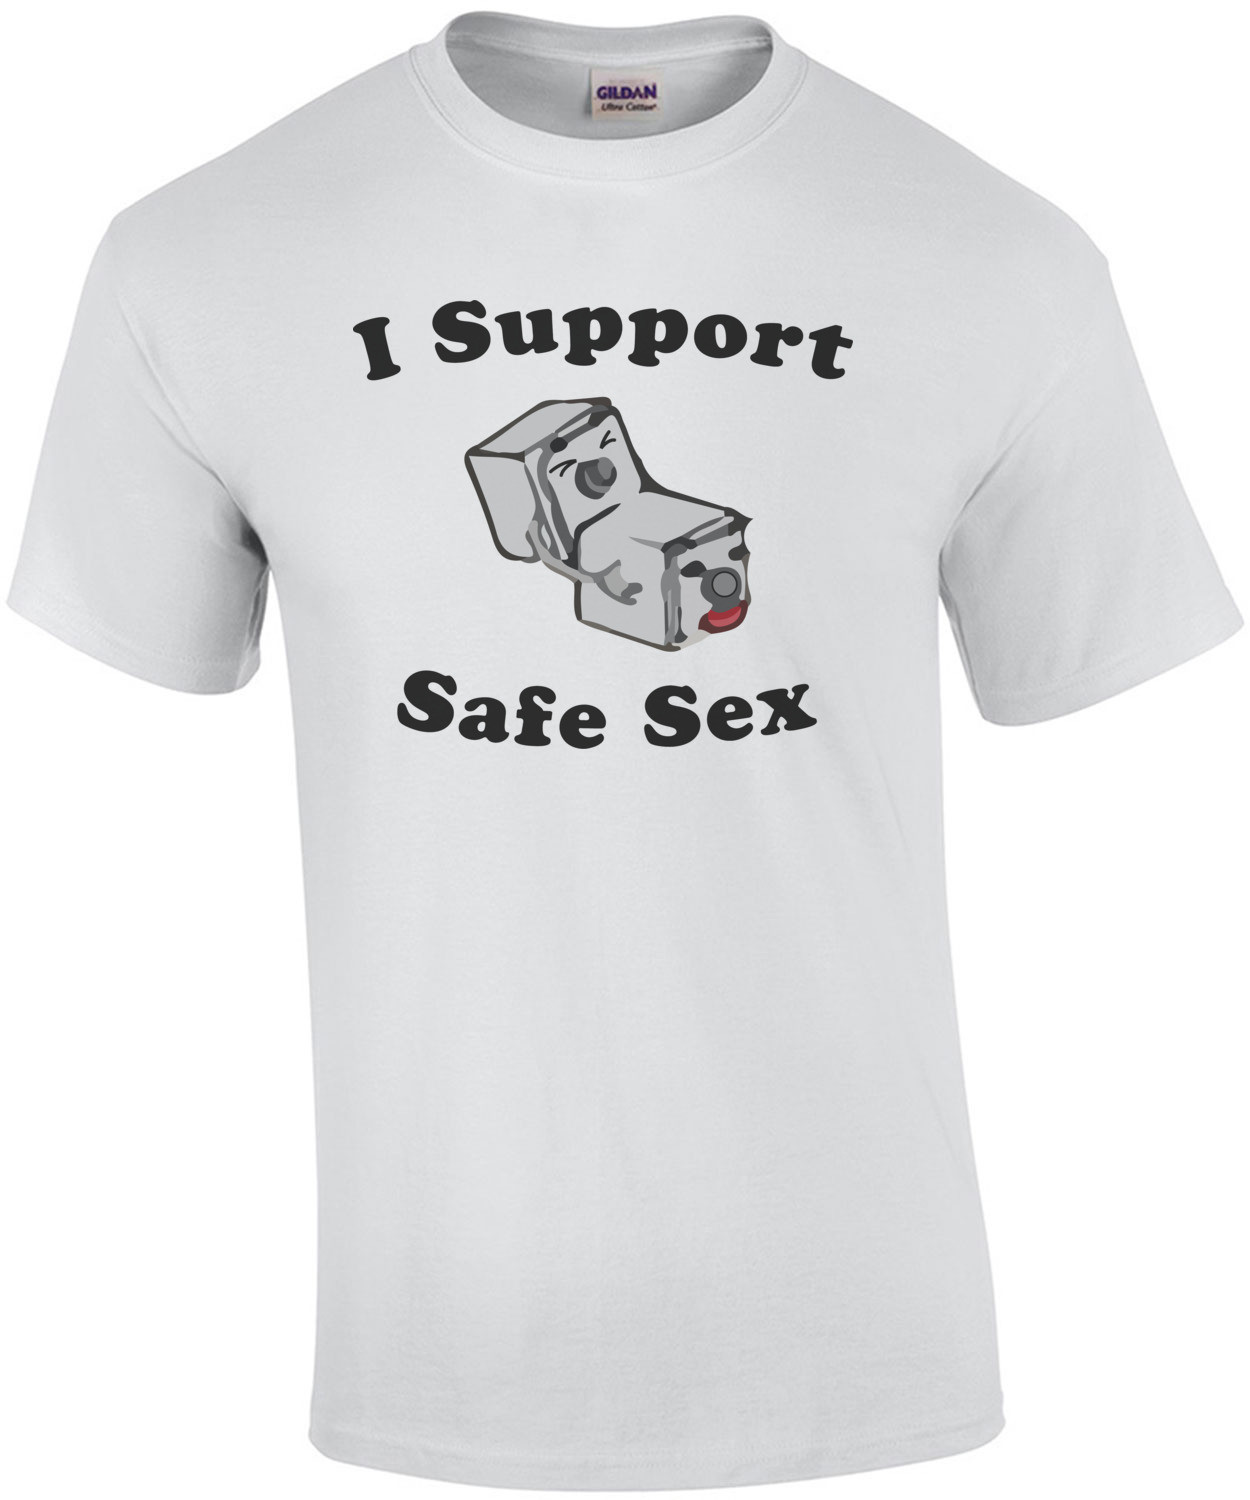 I Support Safe Sex - Funny T-Shirt